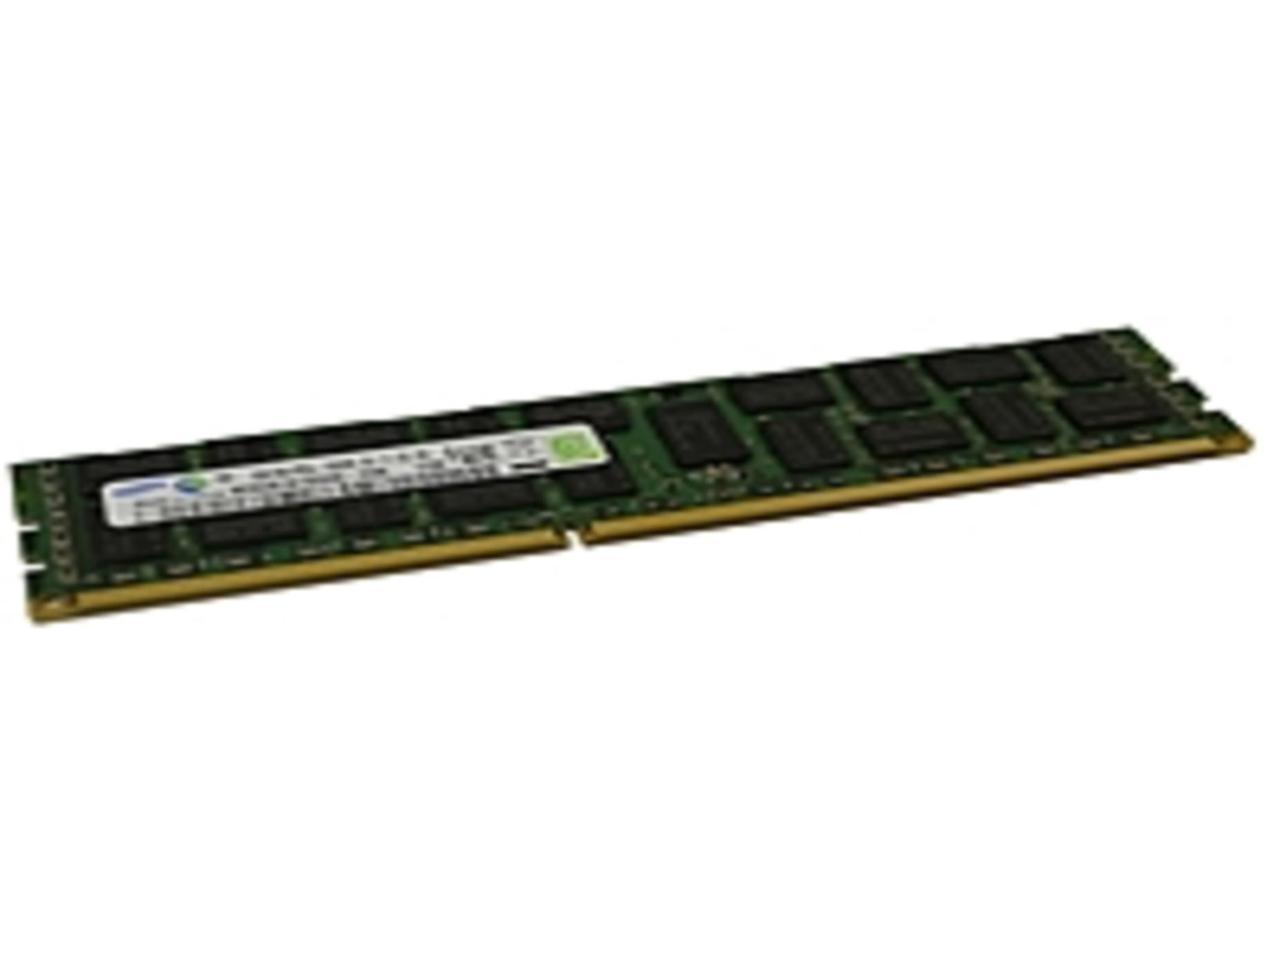 Server RAM 16GB 2x 8GB PC3L-10600R ECC Registered DDR3L 1333MHz 1.35v Memory LOT 